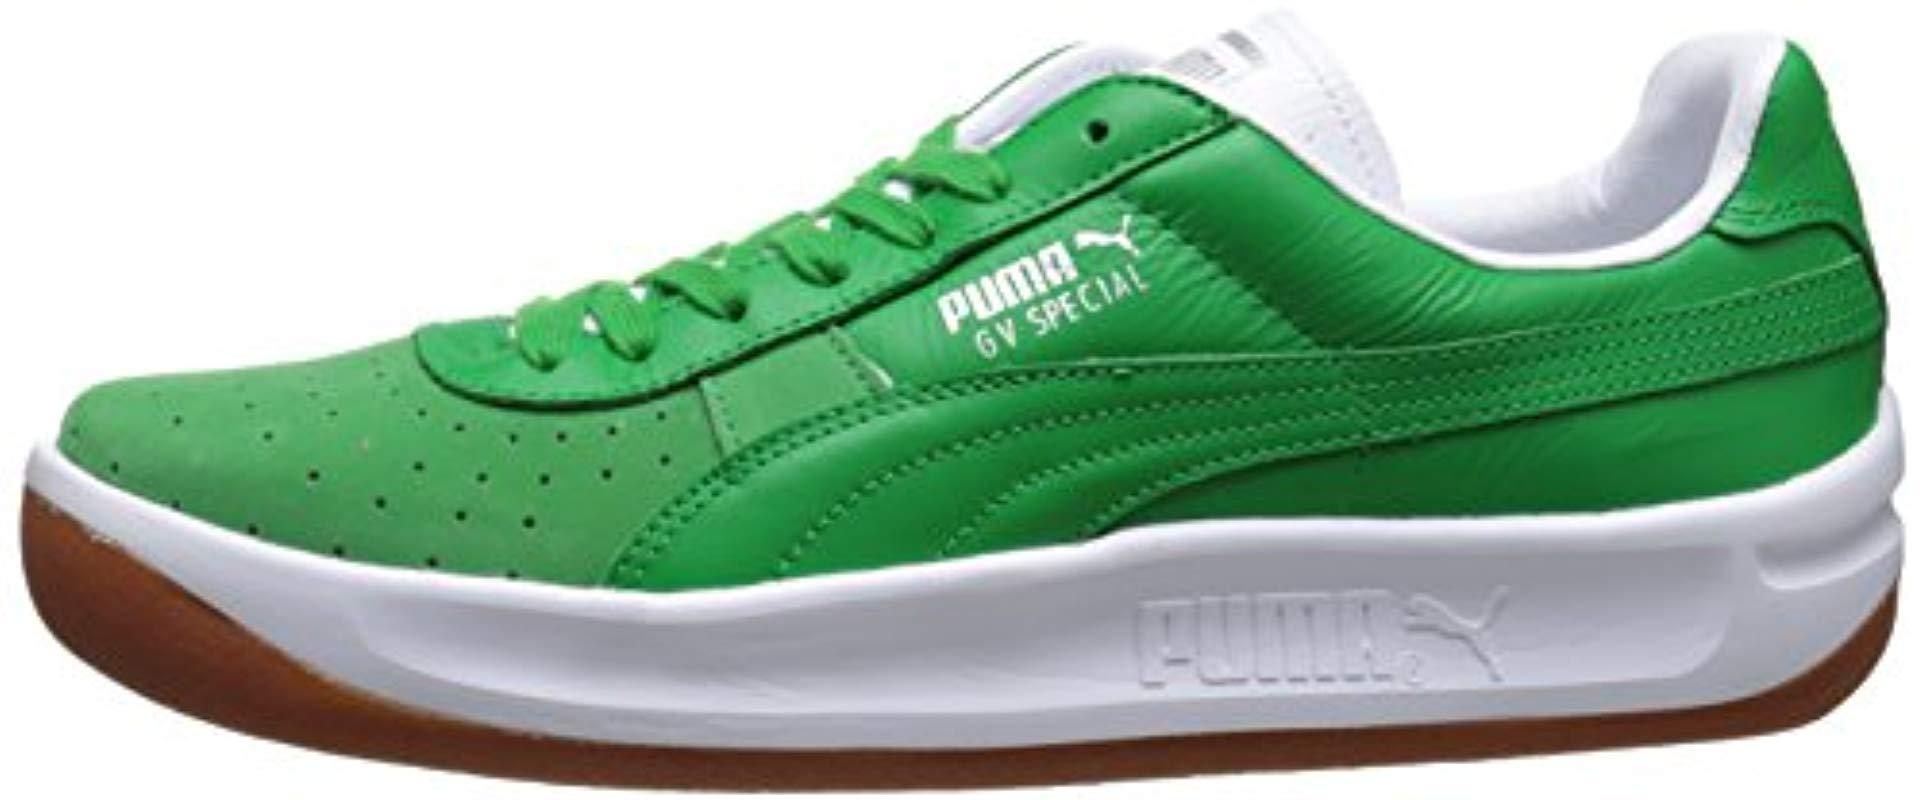 puma gv special green